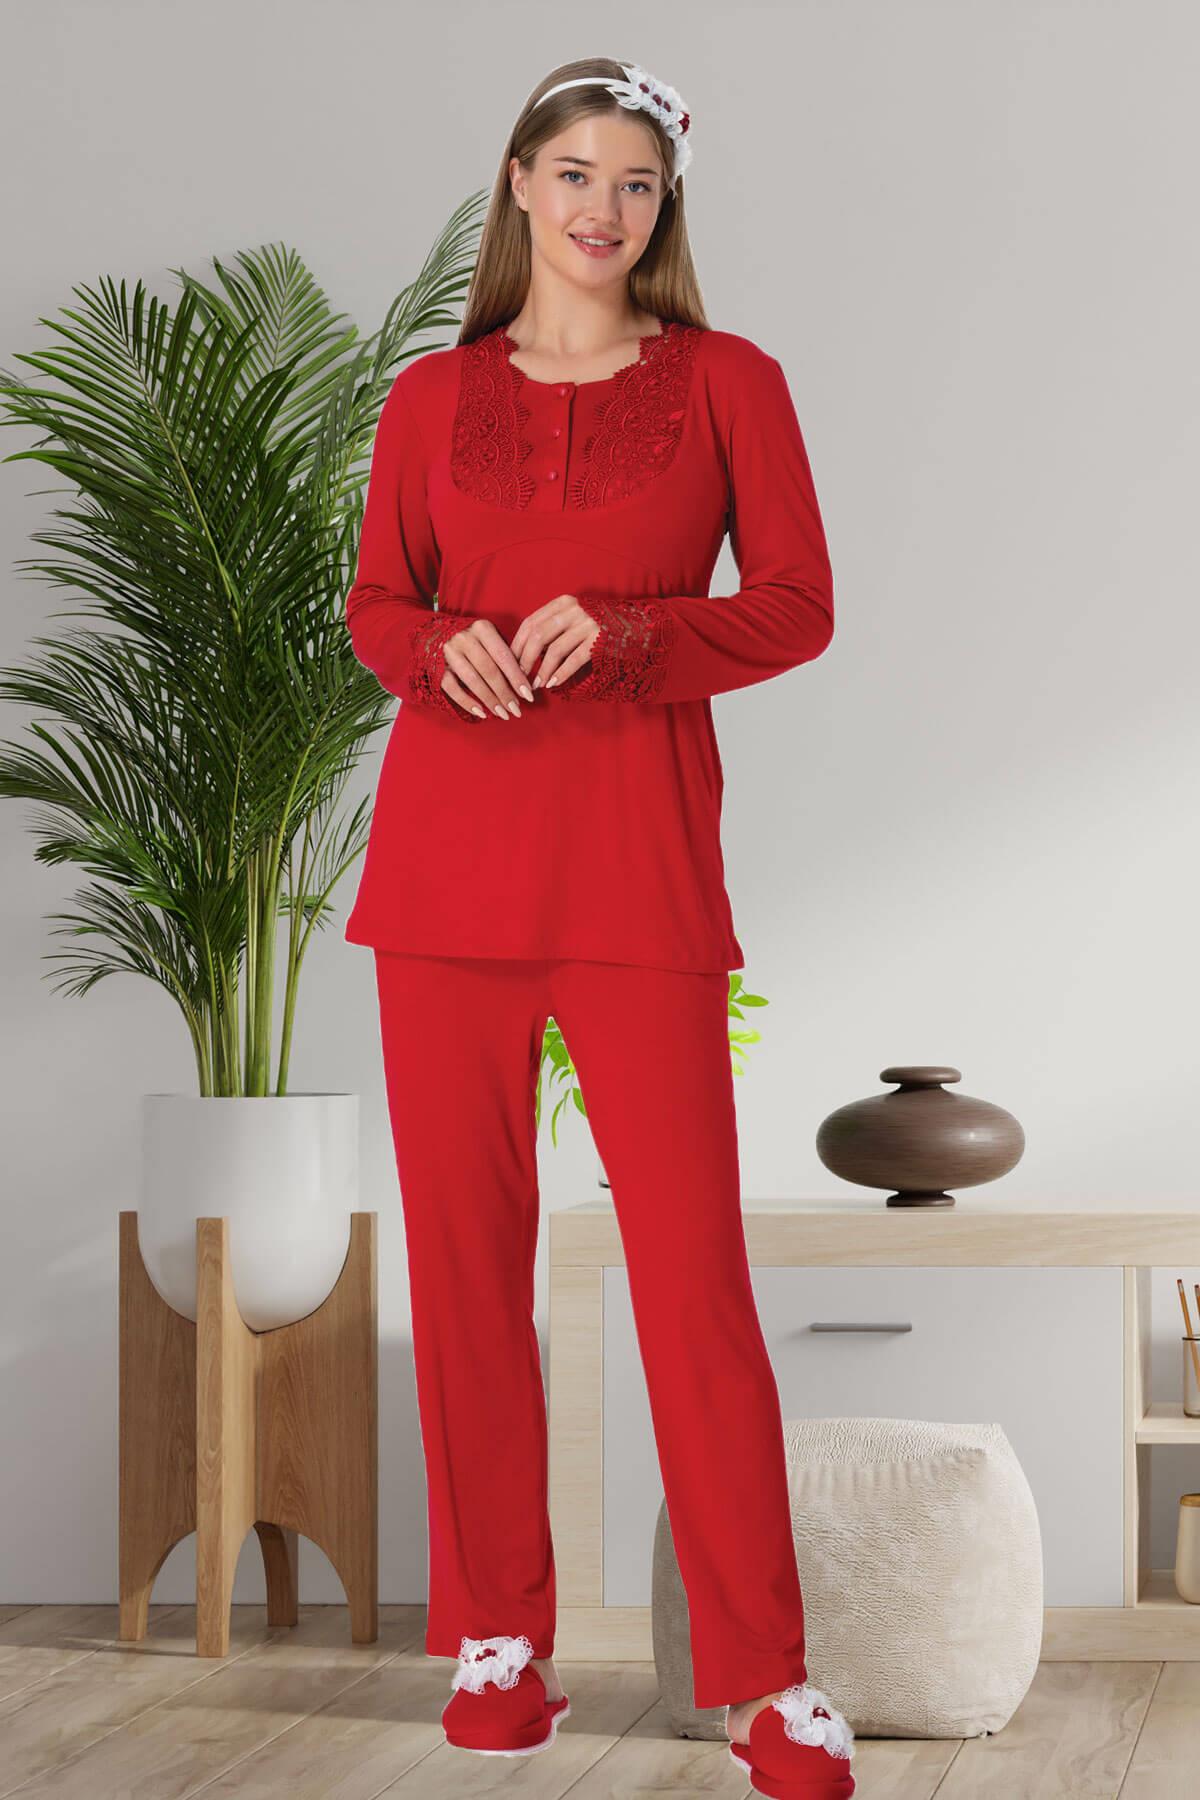 Lace Maternity & Nursing Pajamas Red - 5914